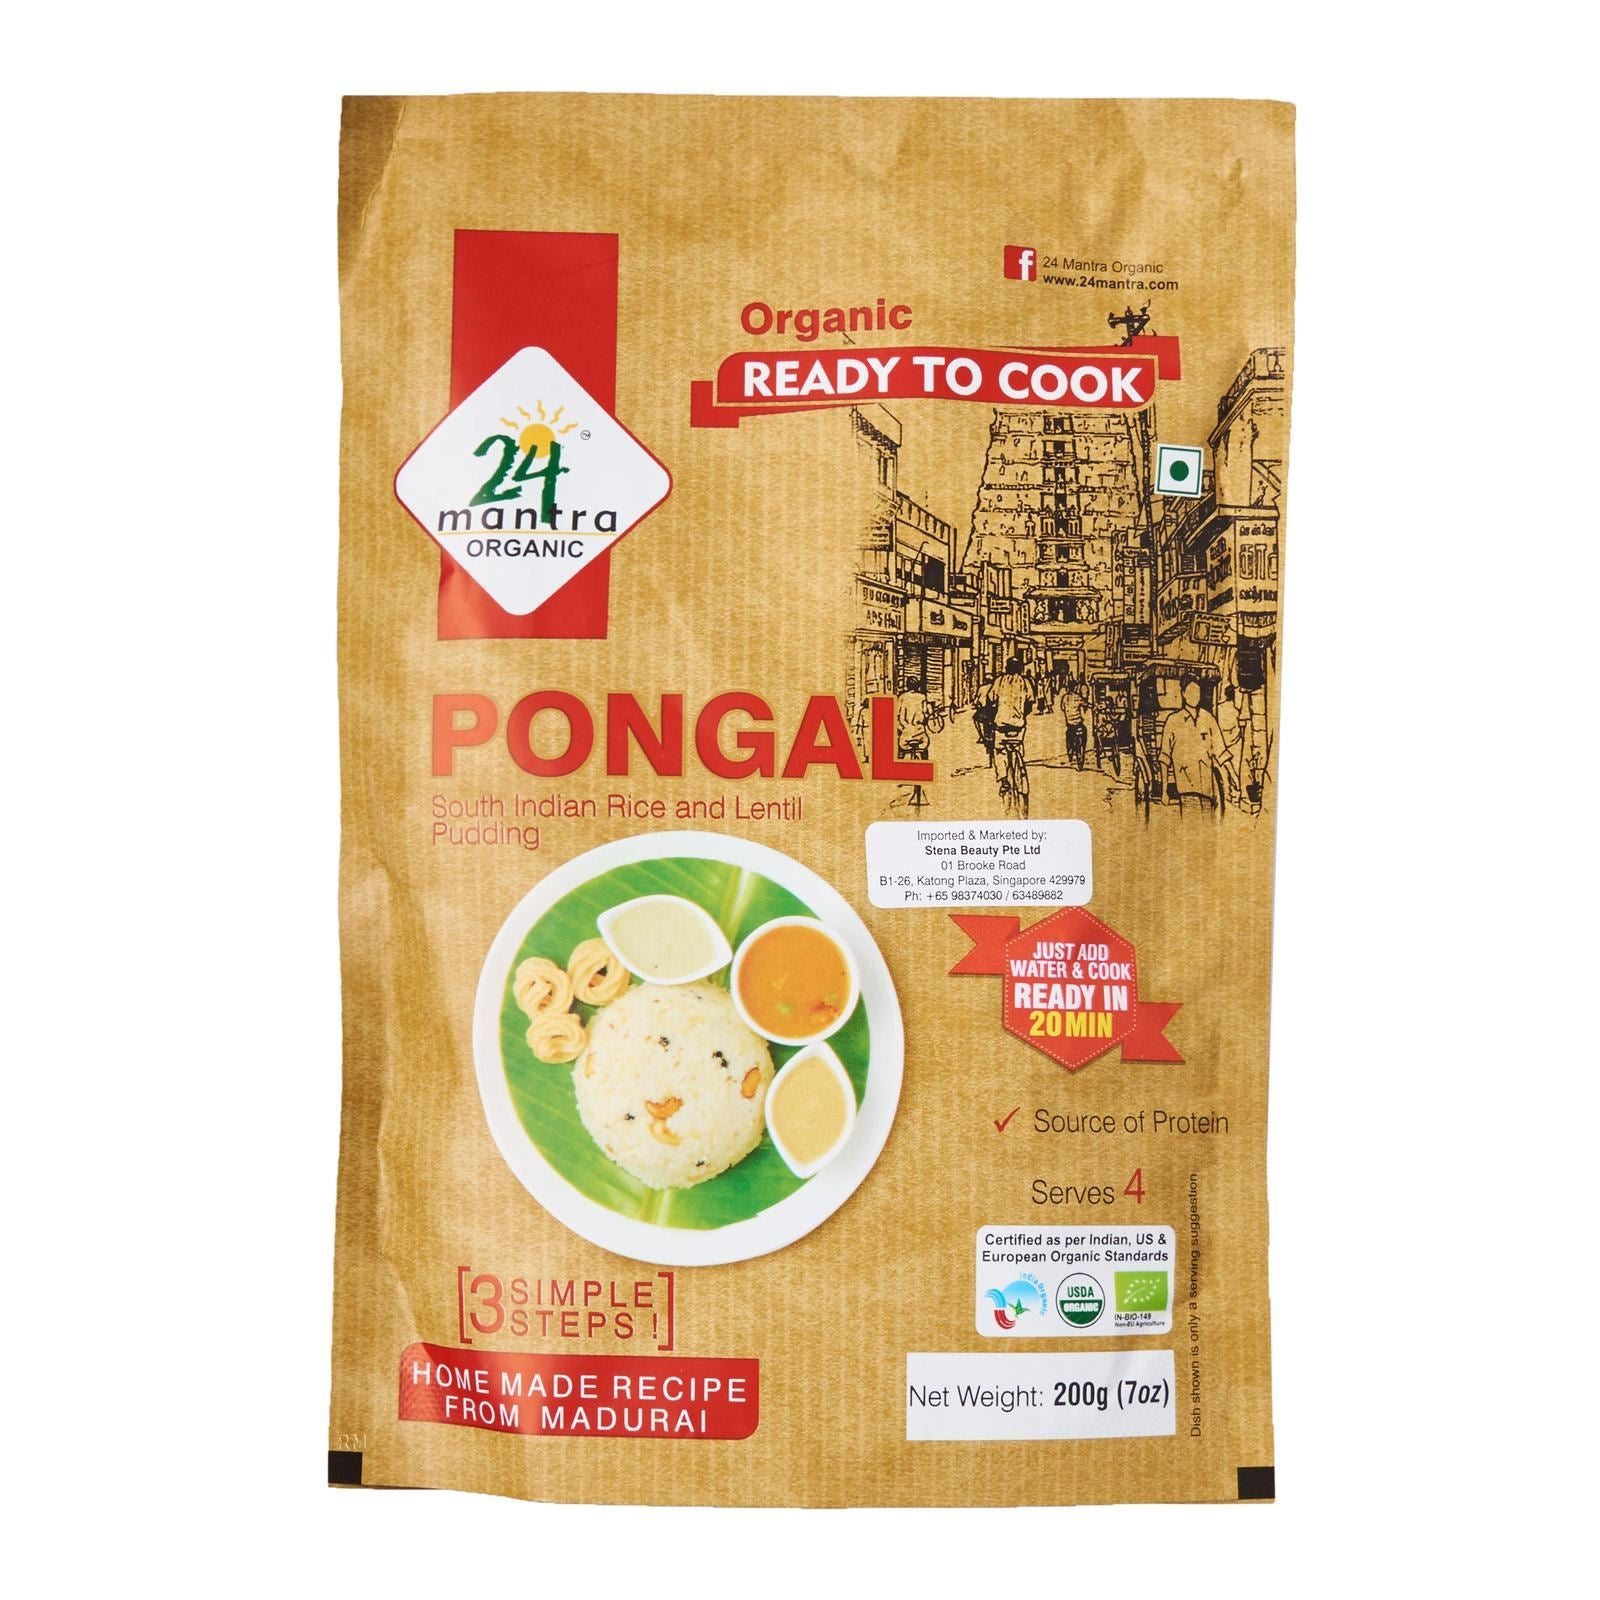 24 MANTRA Pongal (Certified ORGANIC)